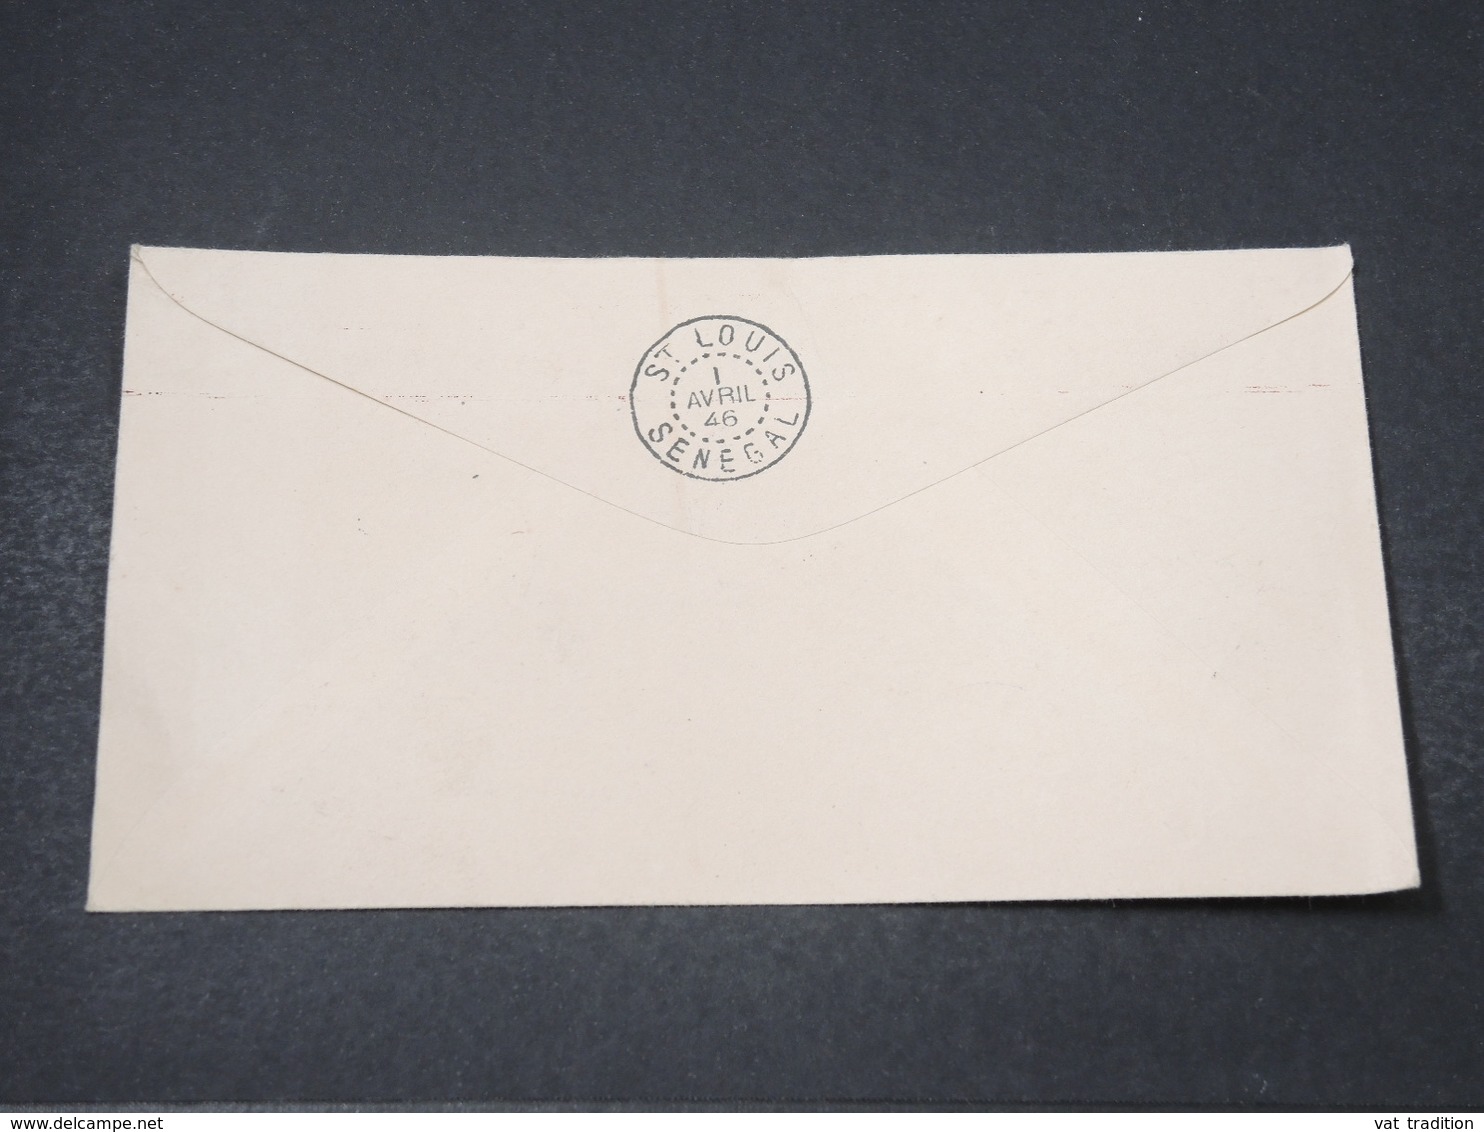 MAURITANIE - Enveloppe De La Foire Exposition Du Trarza à Rosso En 1946 - L 16868 - Covers & Documents